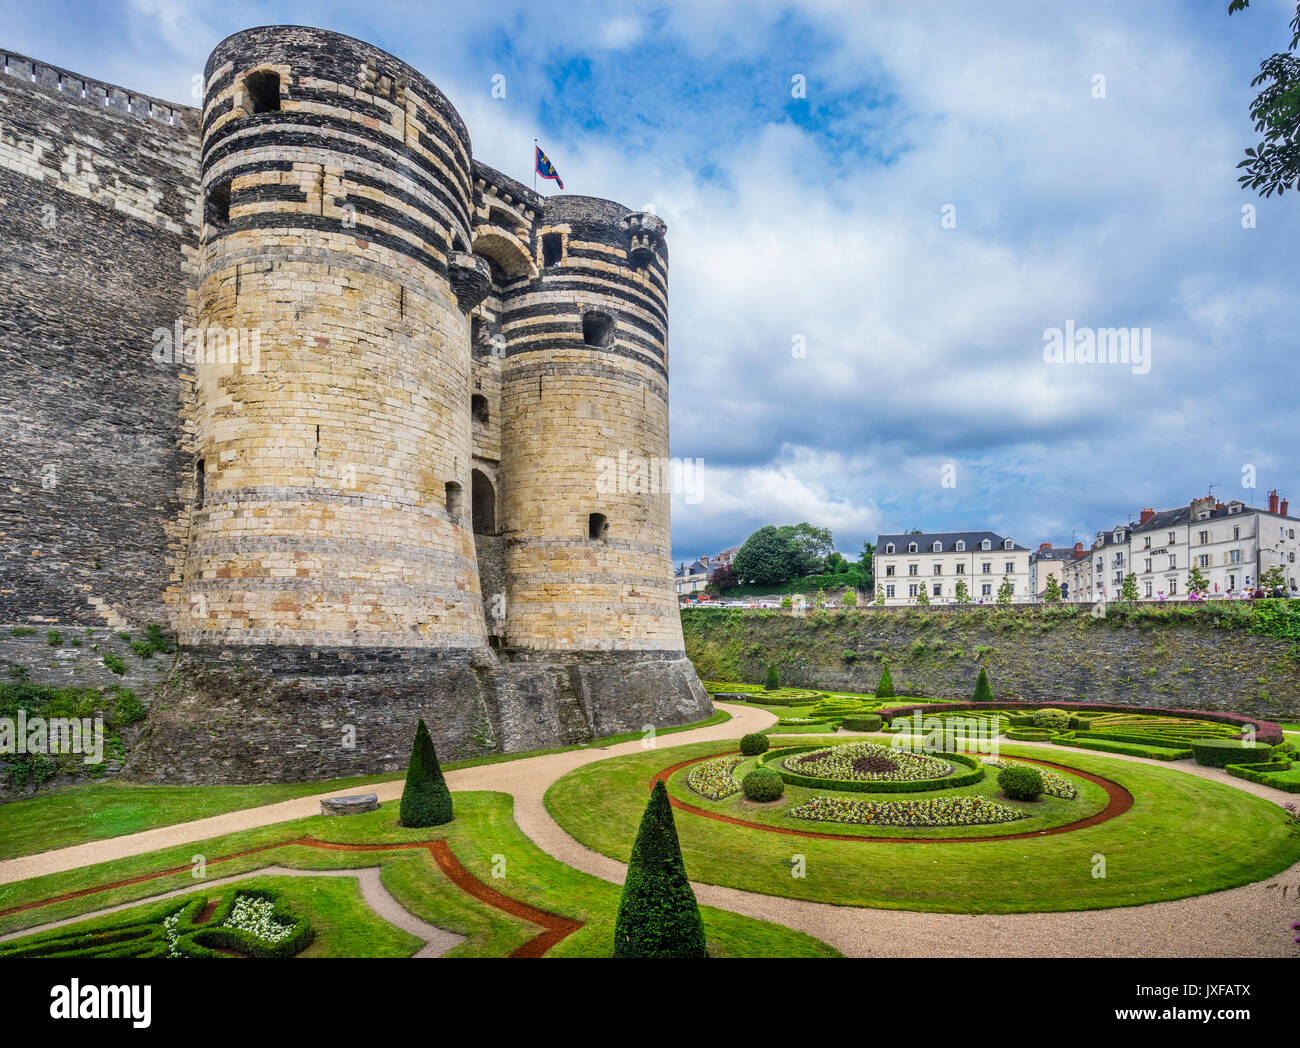 Frankreich, Pays de la Loire, Angers, Château d'Angers, verzierte Gärten unter dem South Gate Zinnen der mittelalterlichen Burg Stockfoto